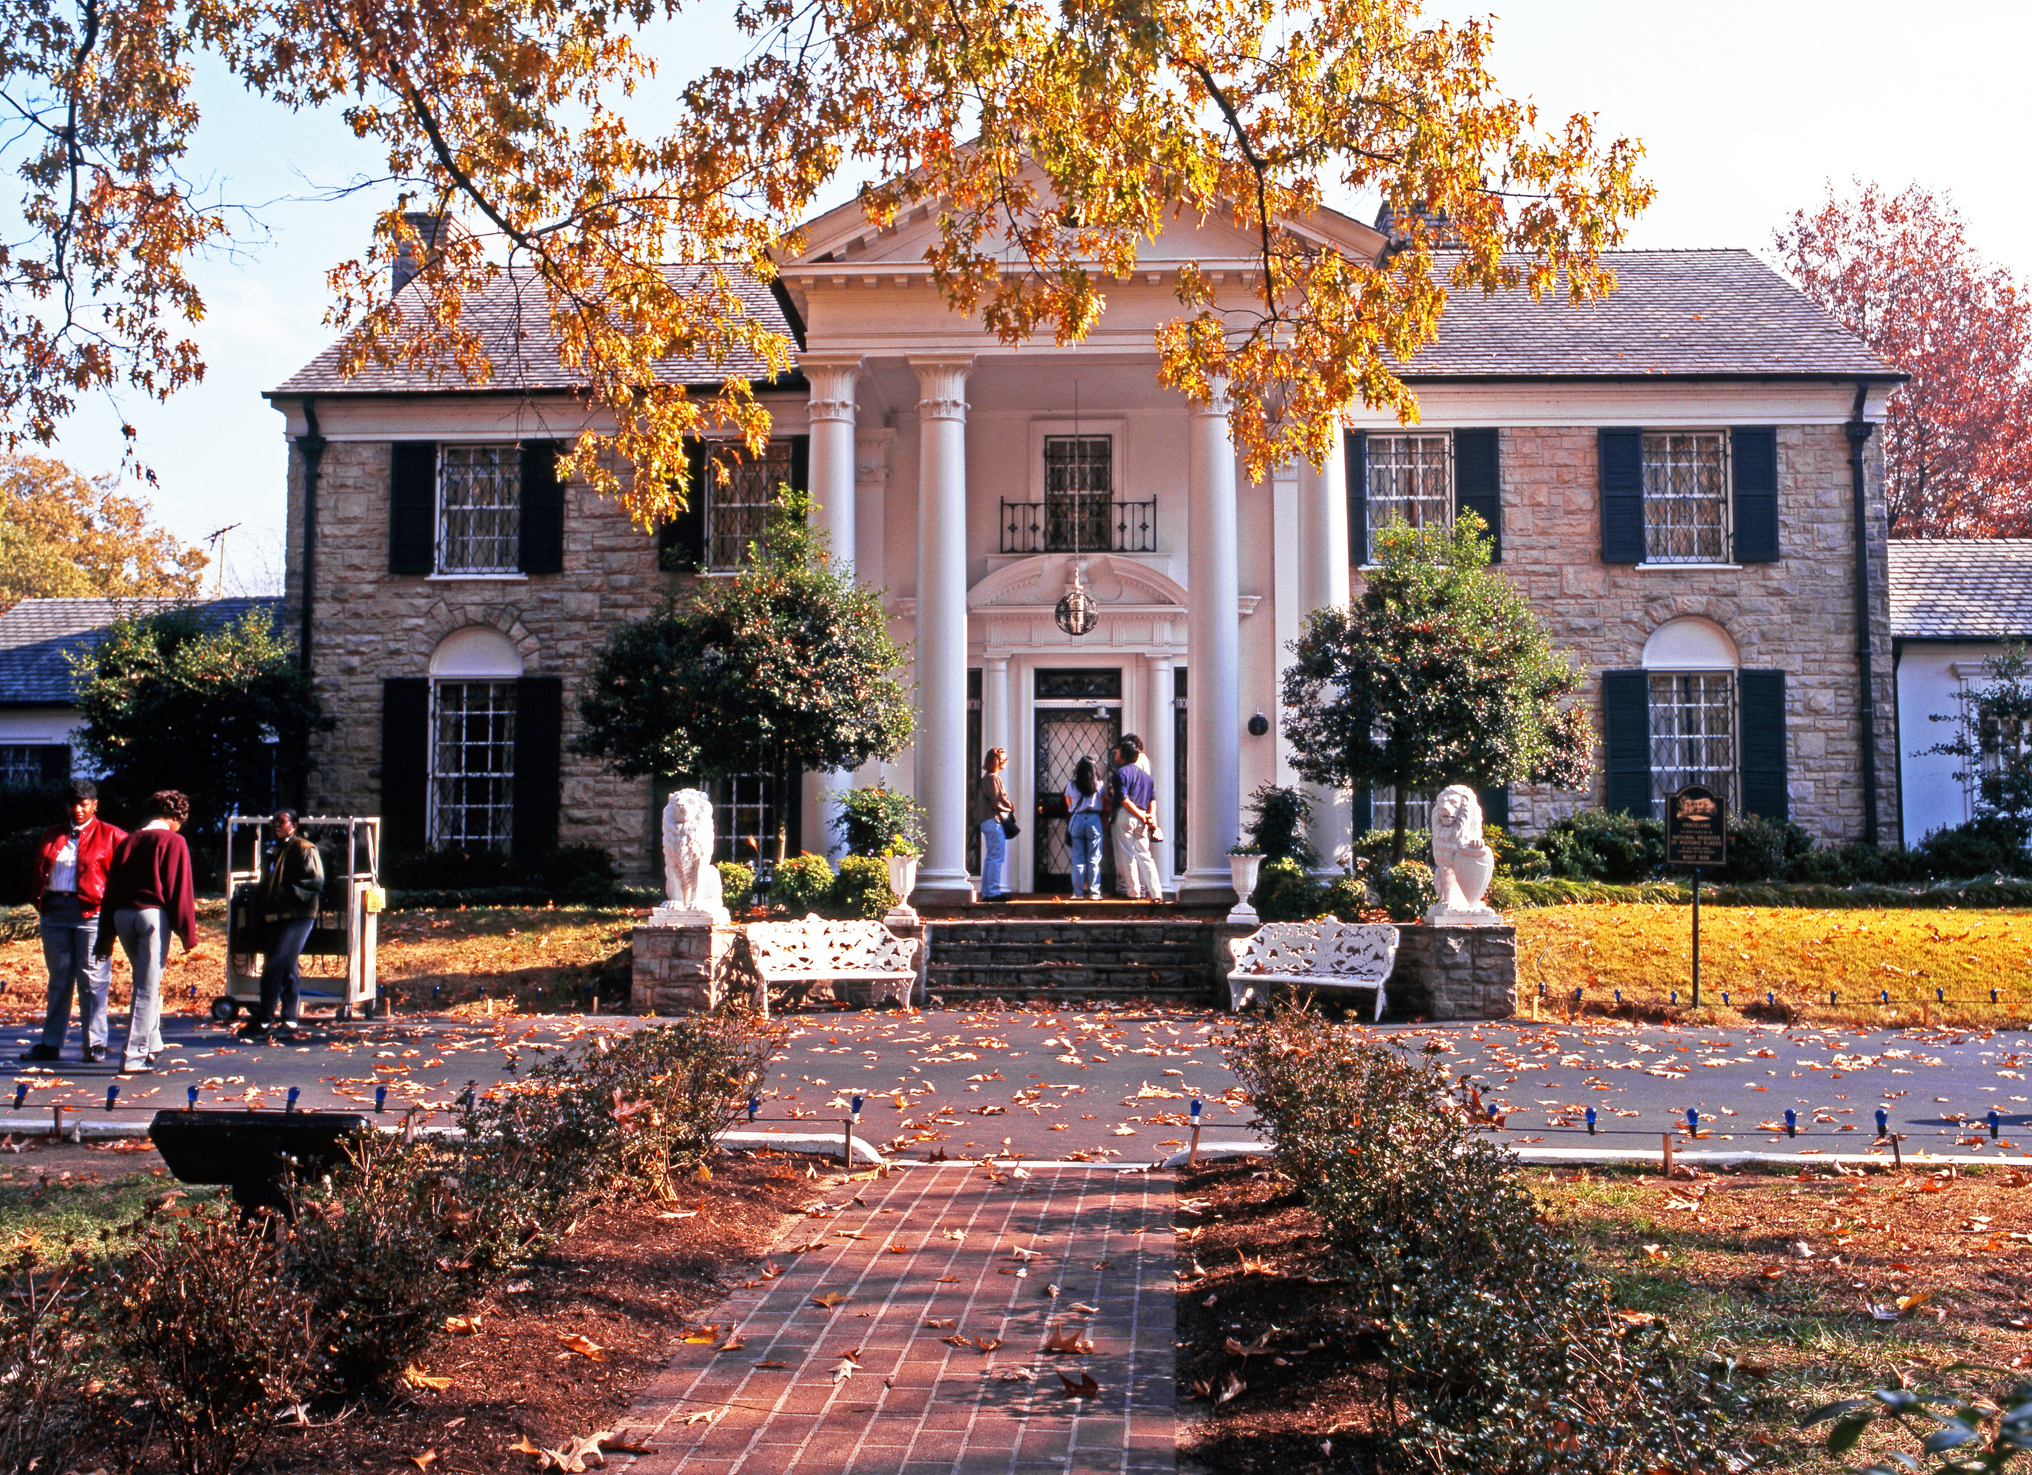 Graceland, the home of Elvis Presley